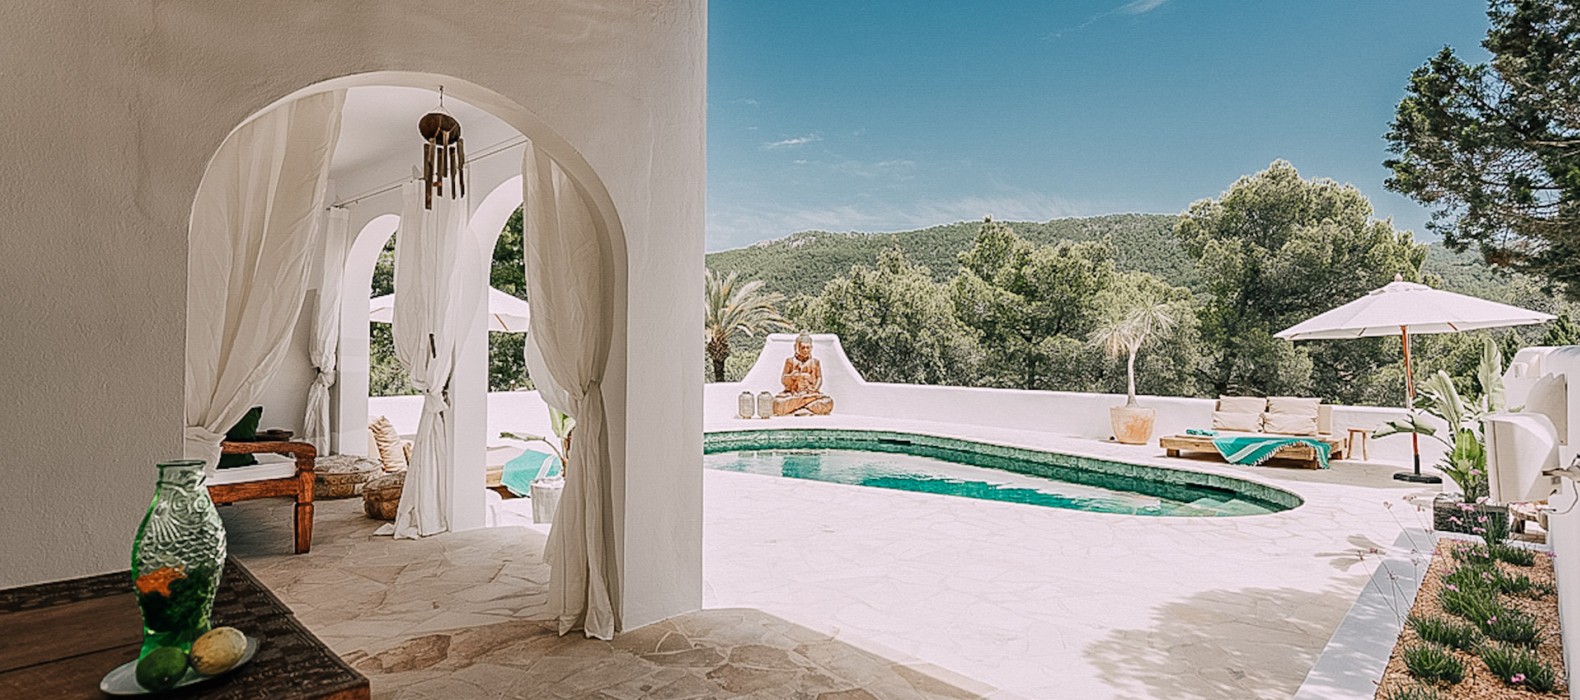 Chill area with pool of Villa La Colina in Ibiza